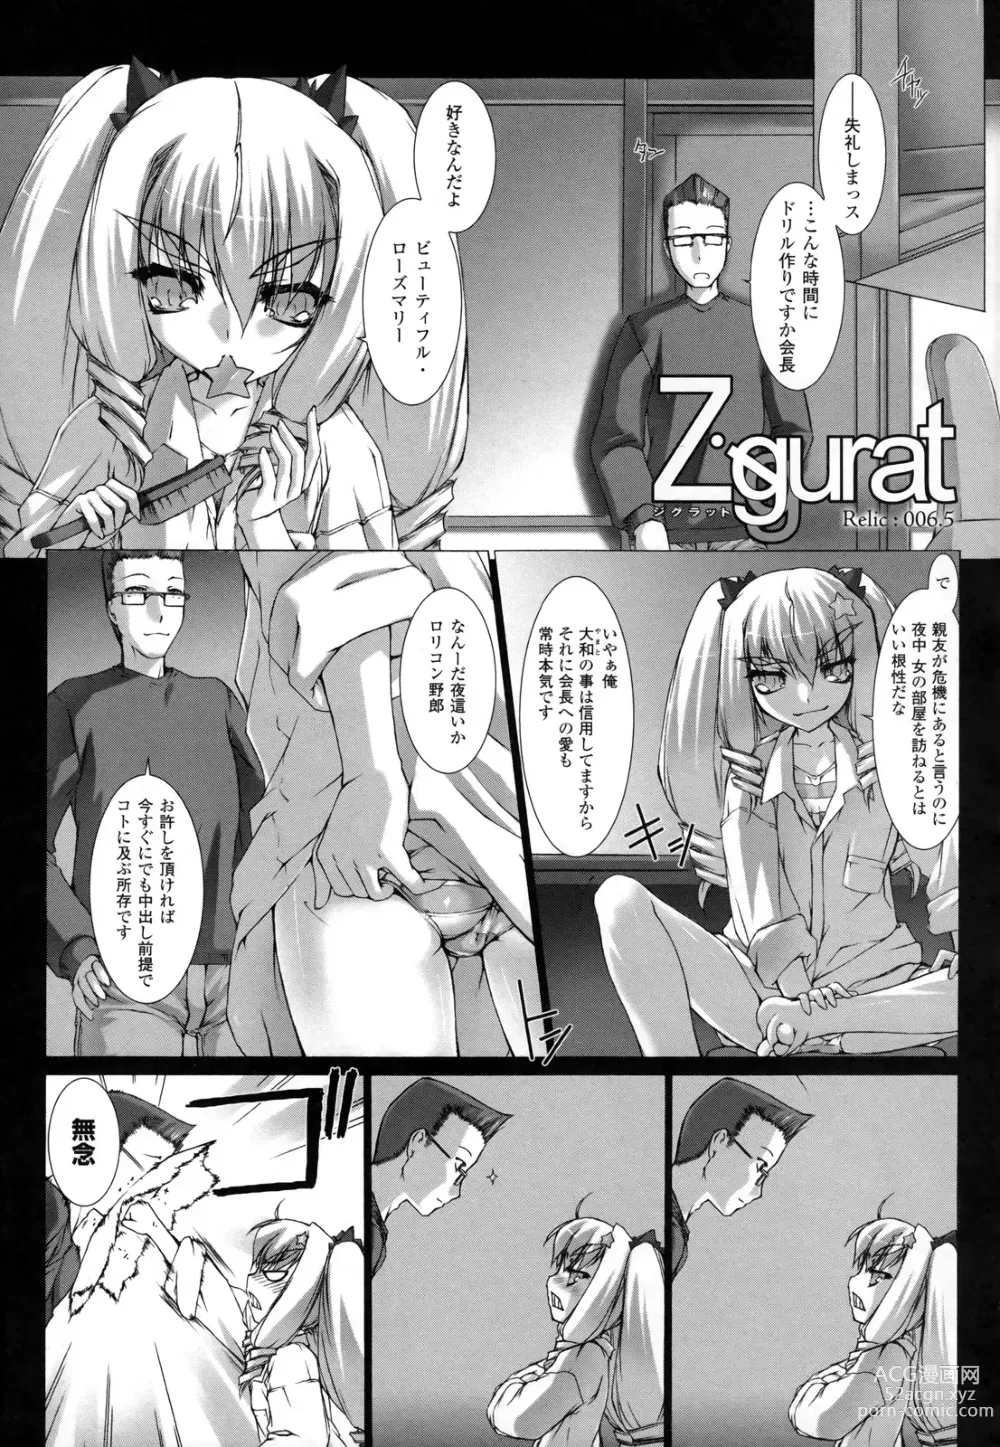 Page 6 of manga Ziggurat 2